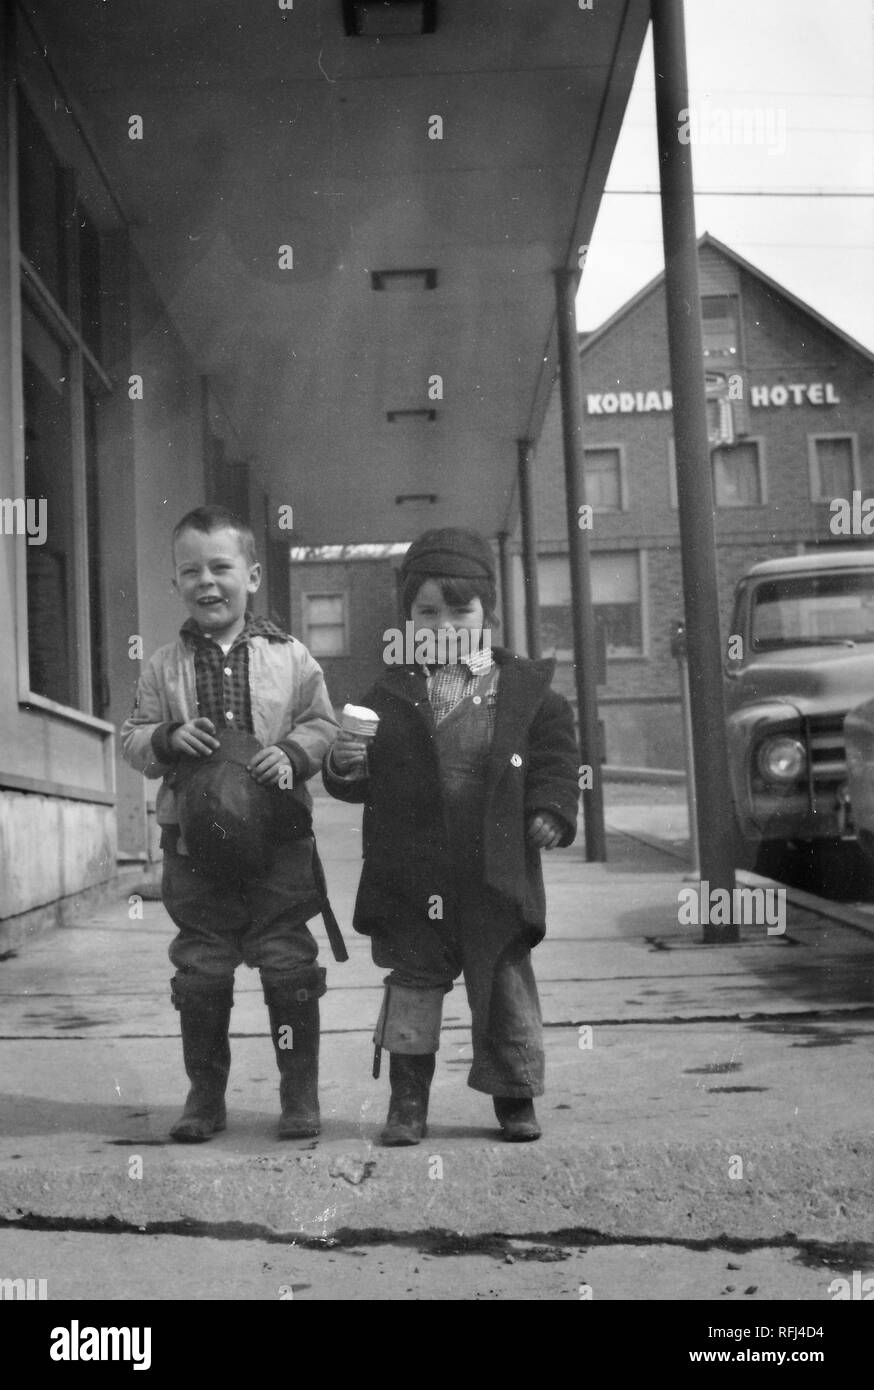 Photographie en noir et blanc de deux petits garçons, souriant, debout ensemble en vue de pleine longueur sur un trottoir au centre-ville de Kodiak, Alaska, les deux portant des manteaux chauds et des bottes, l'un tenant une glace partiellement mangés-cornet de crème glacée et l'autre tenant son chapeau, avec un chariot vintage et un bâtiment avec le signe 'Hôtel Kodiak' visible dans l'arrière-plan, photographié au cours d'un voyage de chasse, de pêche situé dans l'Alaska, USA, 1955. () Banque D'Images